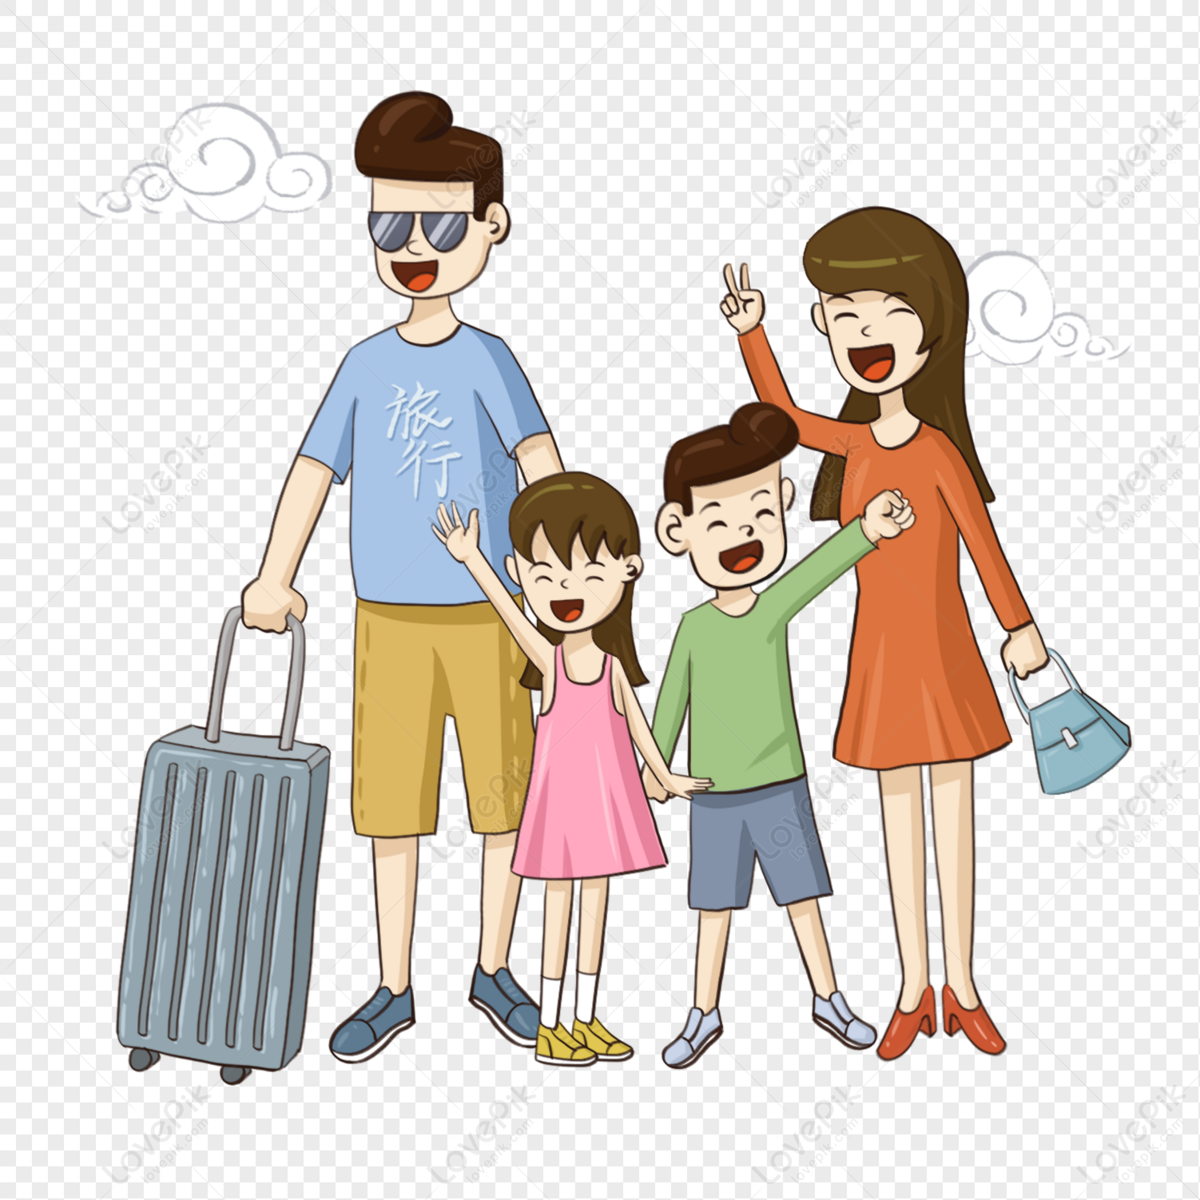 Gia đình bạn đã từng đi du lịch cùng nhau chưa? Hãy xem bức hình về một chuyến đi du lịch của gia đình để cảm nhận sự hạnh phúc của những người thân trong chuyến đi vui vẻ. Tận hưởng những khoảnh khắc đáng nhớ bằng cách xem bức hình này.